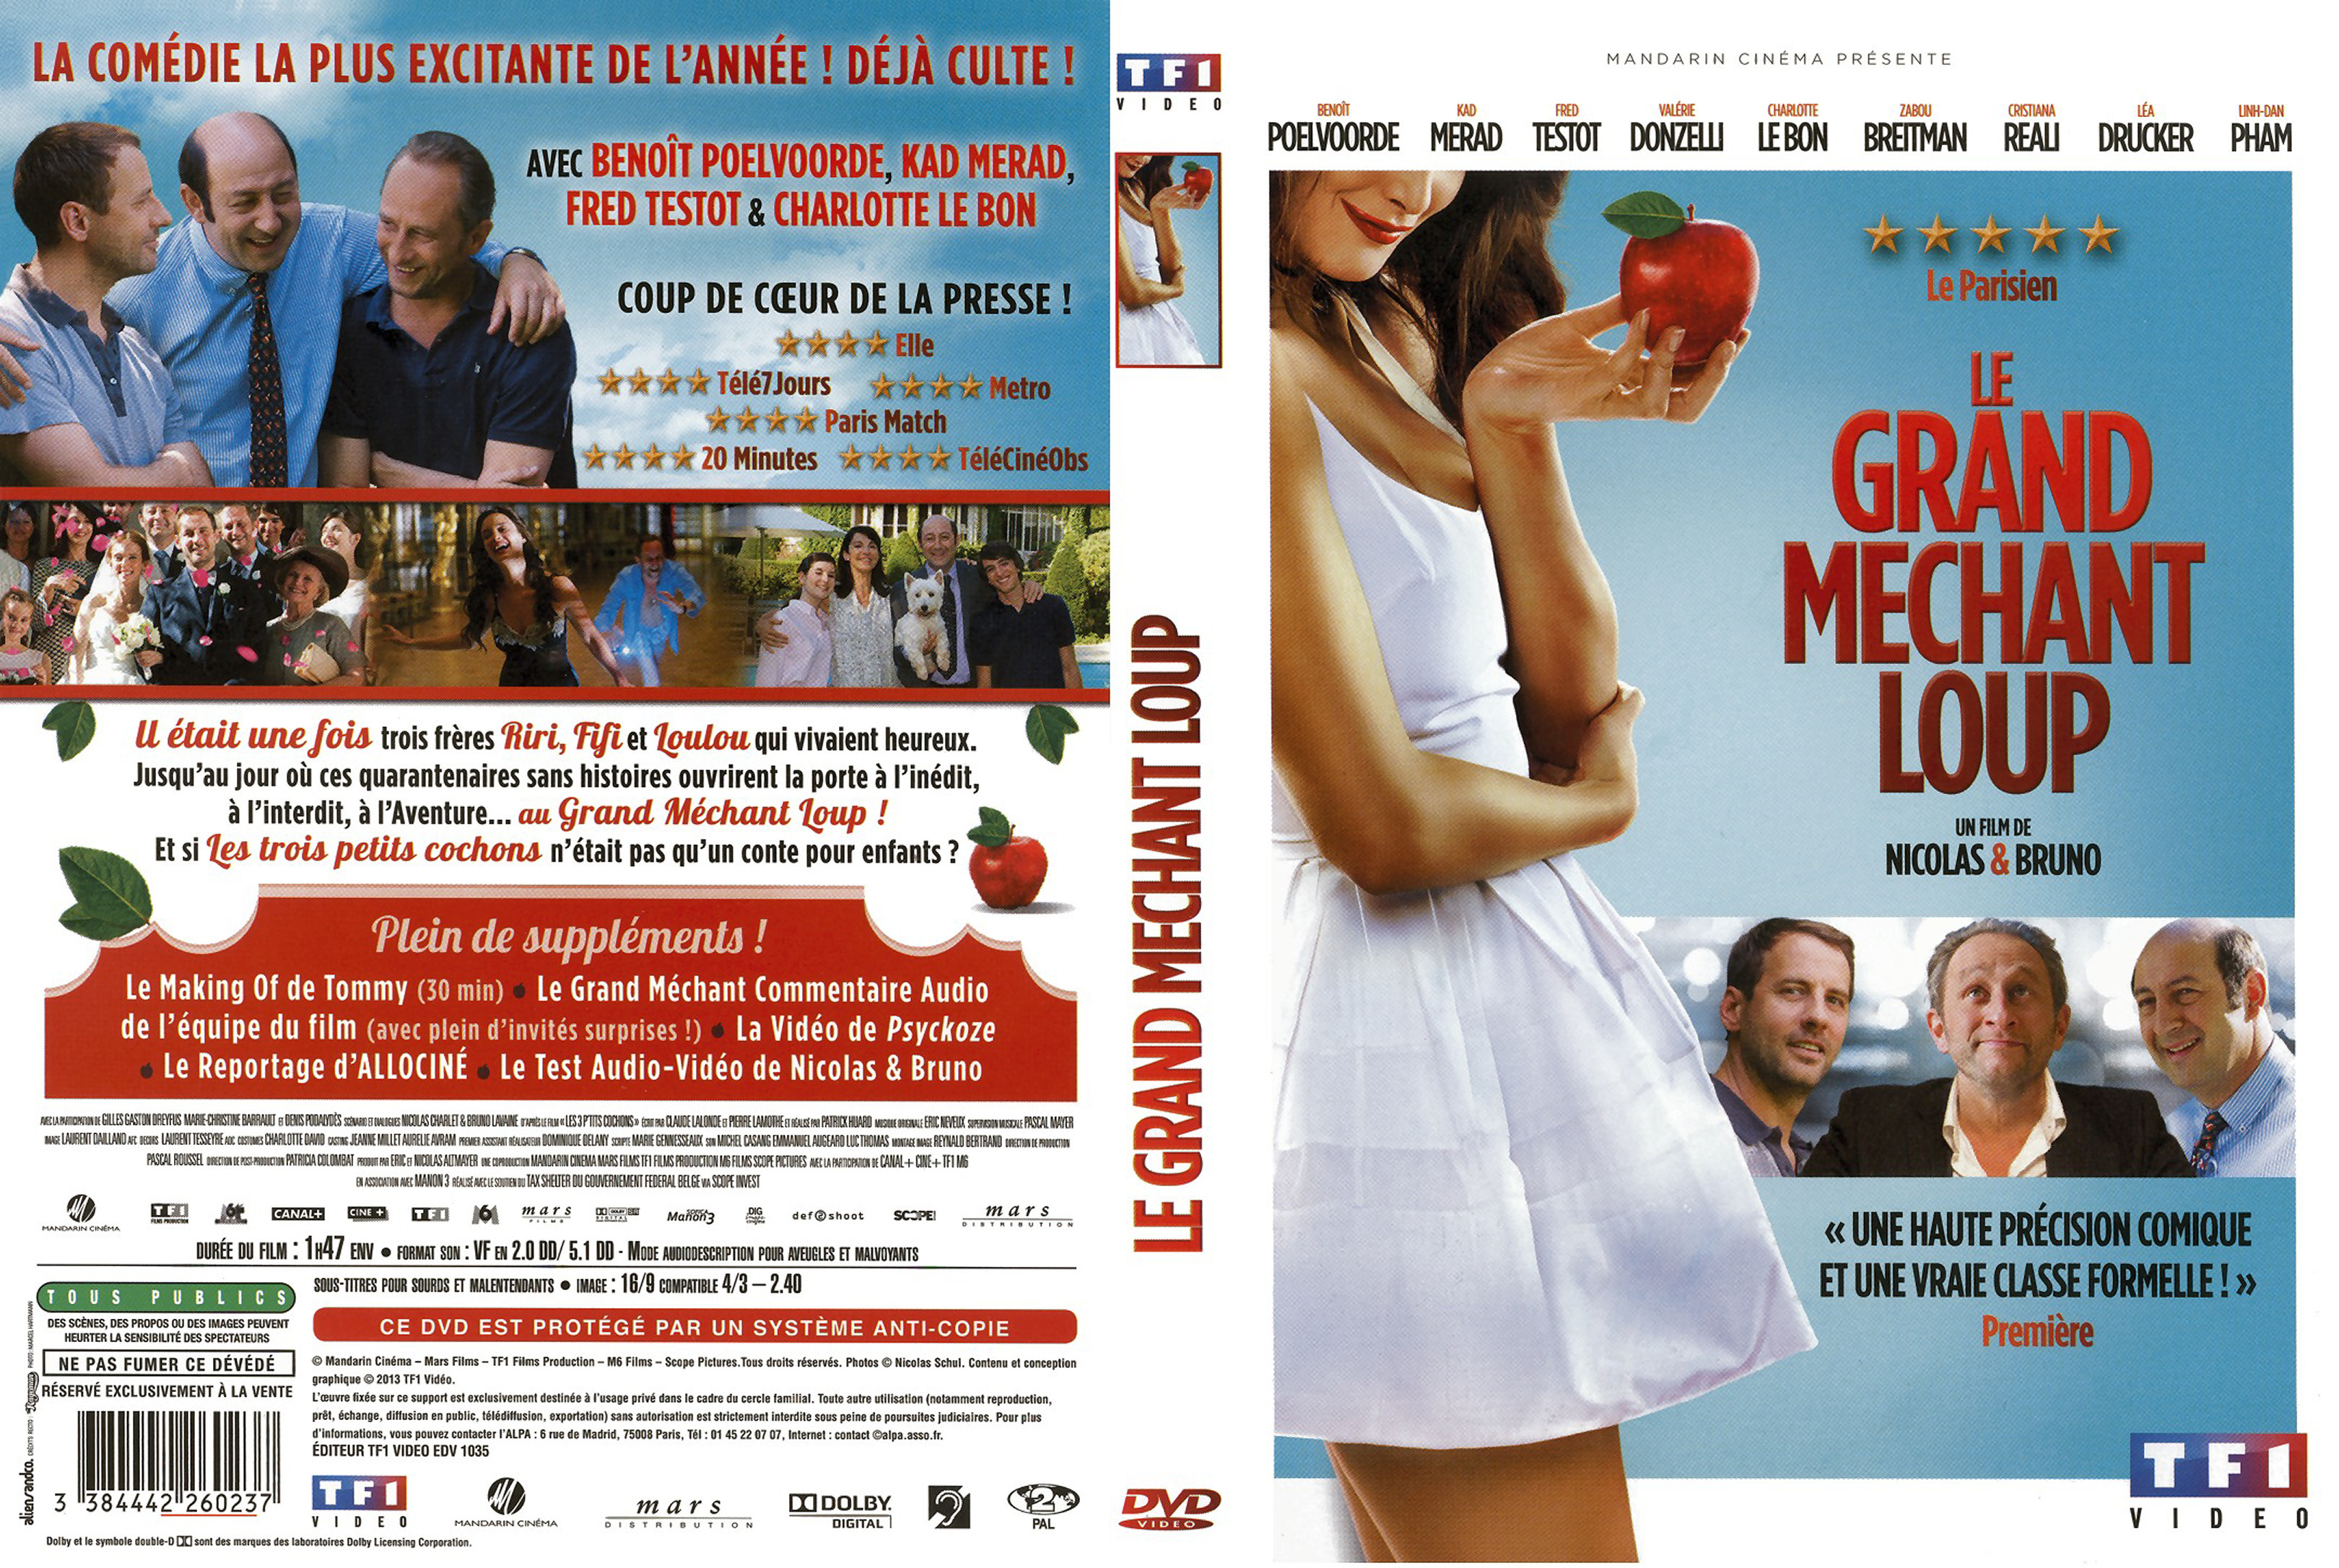 Jaquette DVD Le Grand Mchant Loup